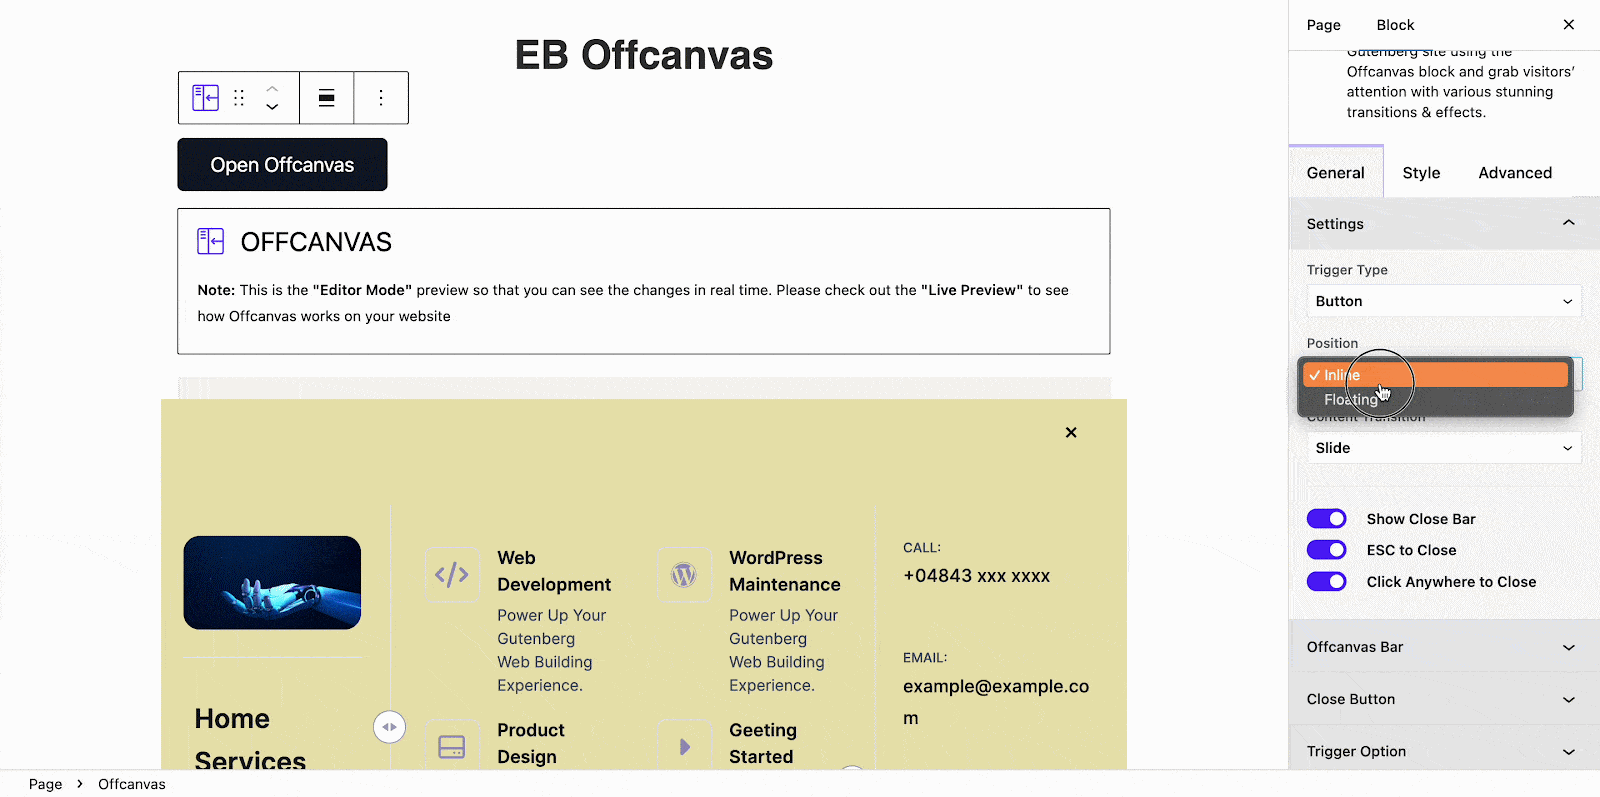 EB Offcanvas